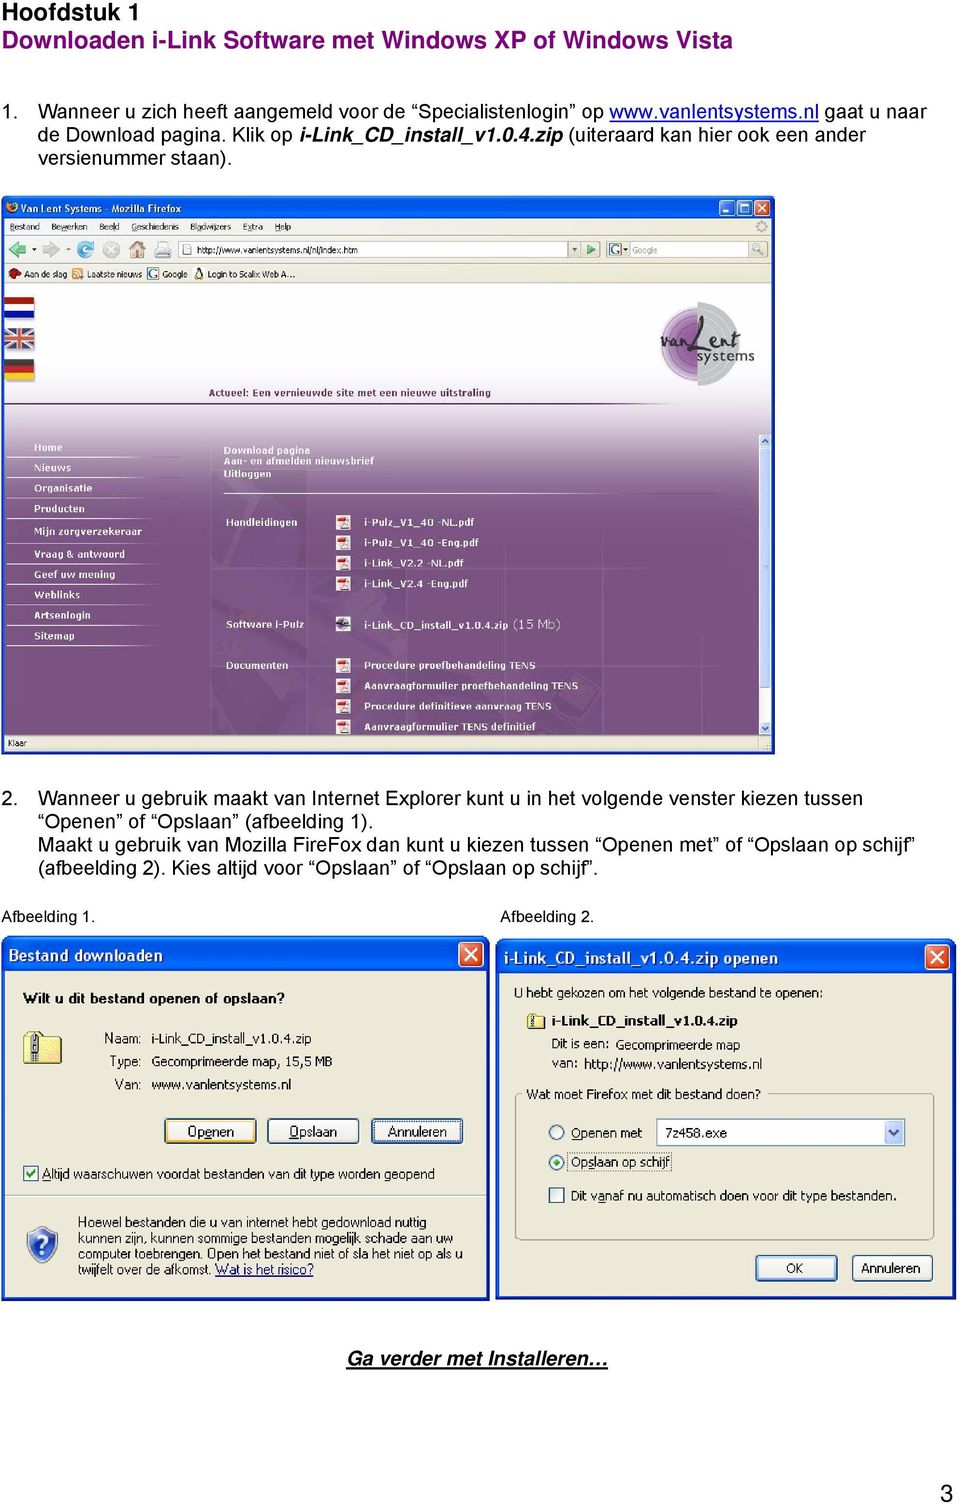 Wanneer u gebruik maakt van Internet Explorer kunt u in het volgende venster kiezen tussen Openen of Opslaan (afbeelding 1).